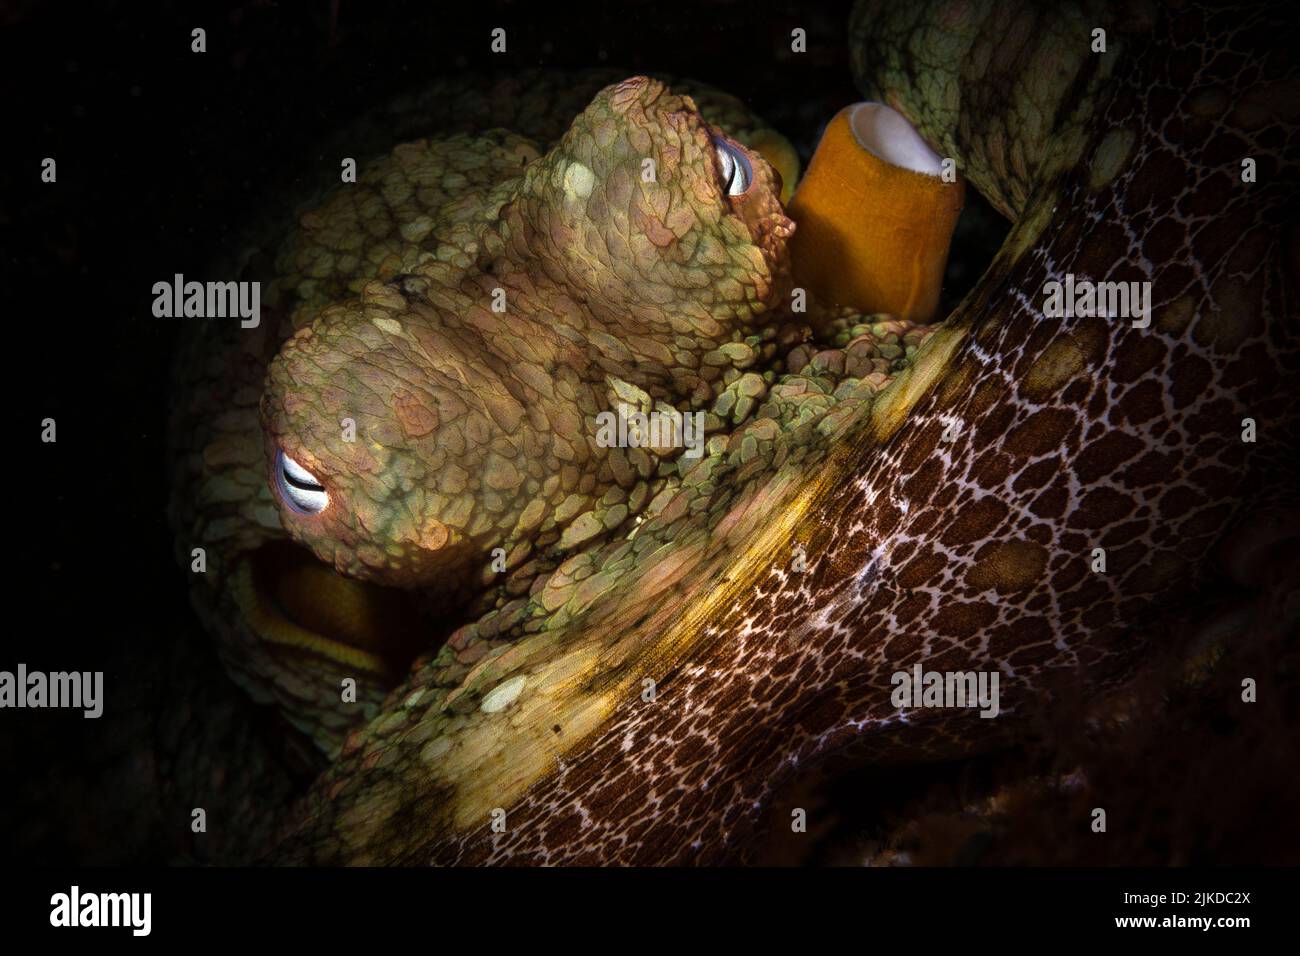 Ein kalifornischer Oktopus sitzt in einem Spalt, so dass ich seine Augen mit einem leichten Snoot beleuchten kann. Stockfoto